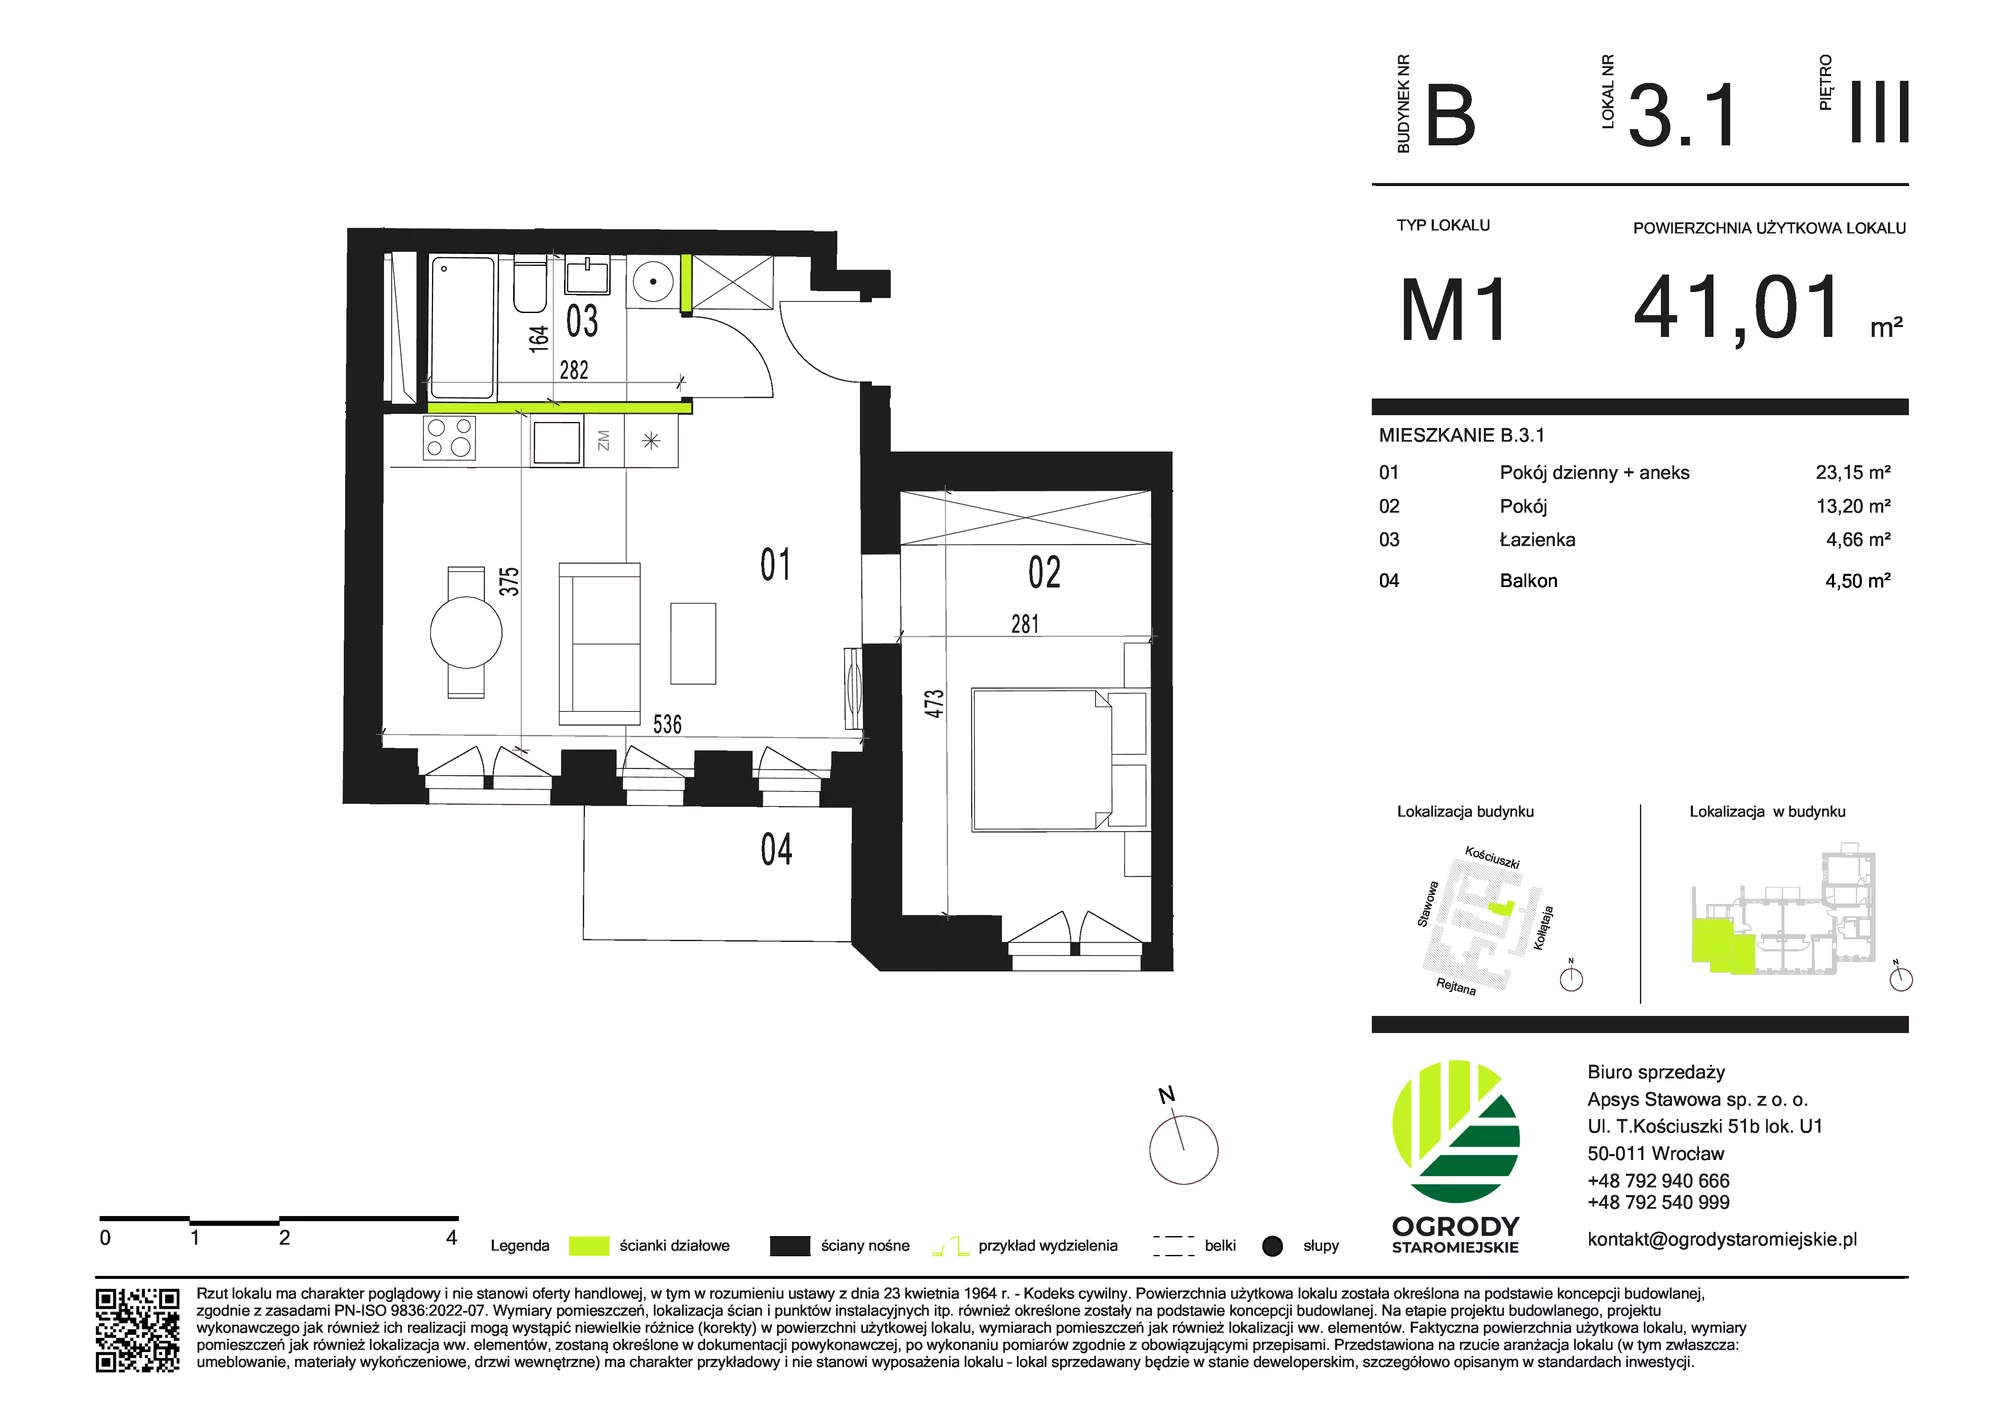 Mieszkanie 41,01 m², piętro 3, oferta nr B.3.1, Ogrody Staromiejskie, Wrocław, Przedmieście Świdnickie, ul. Stawowa 10